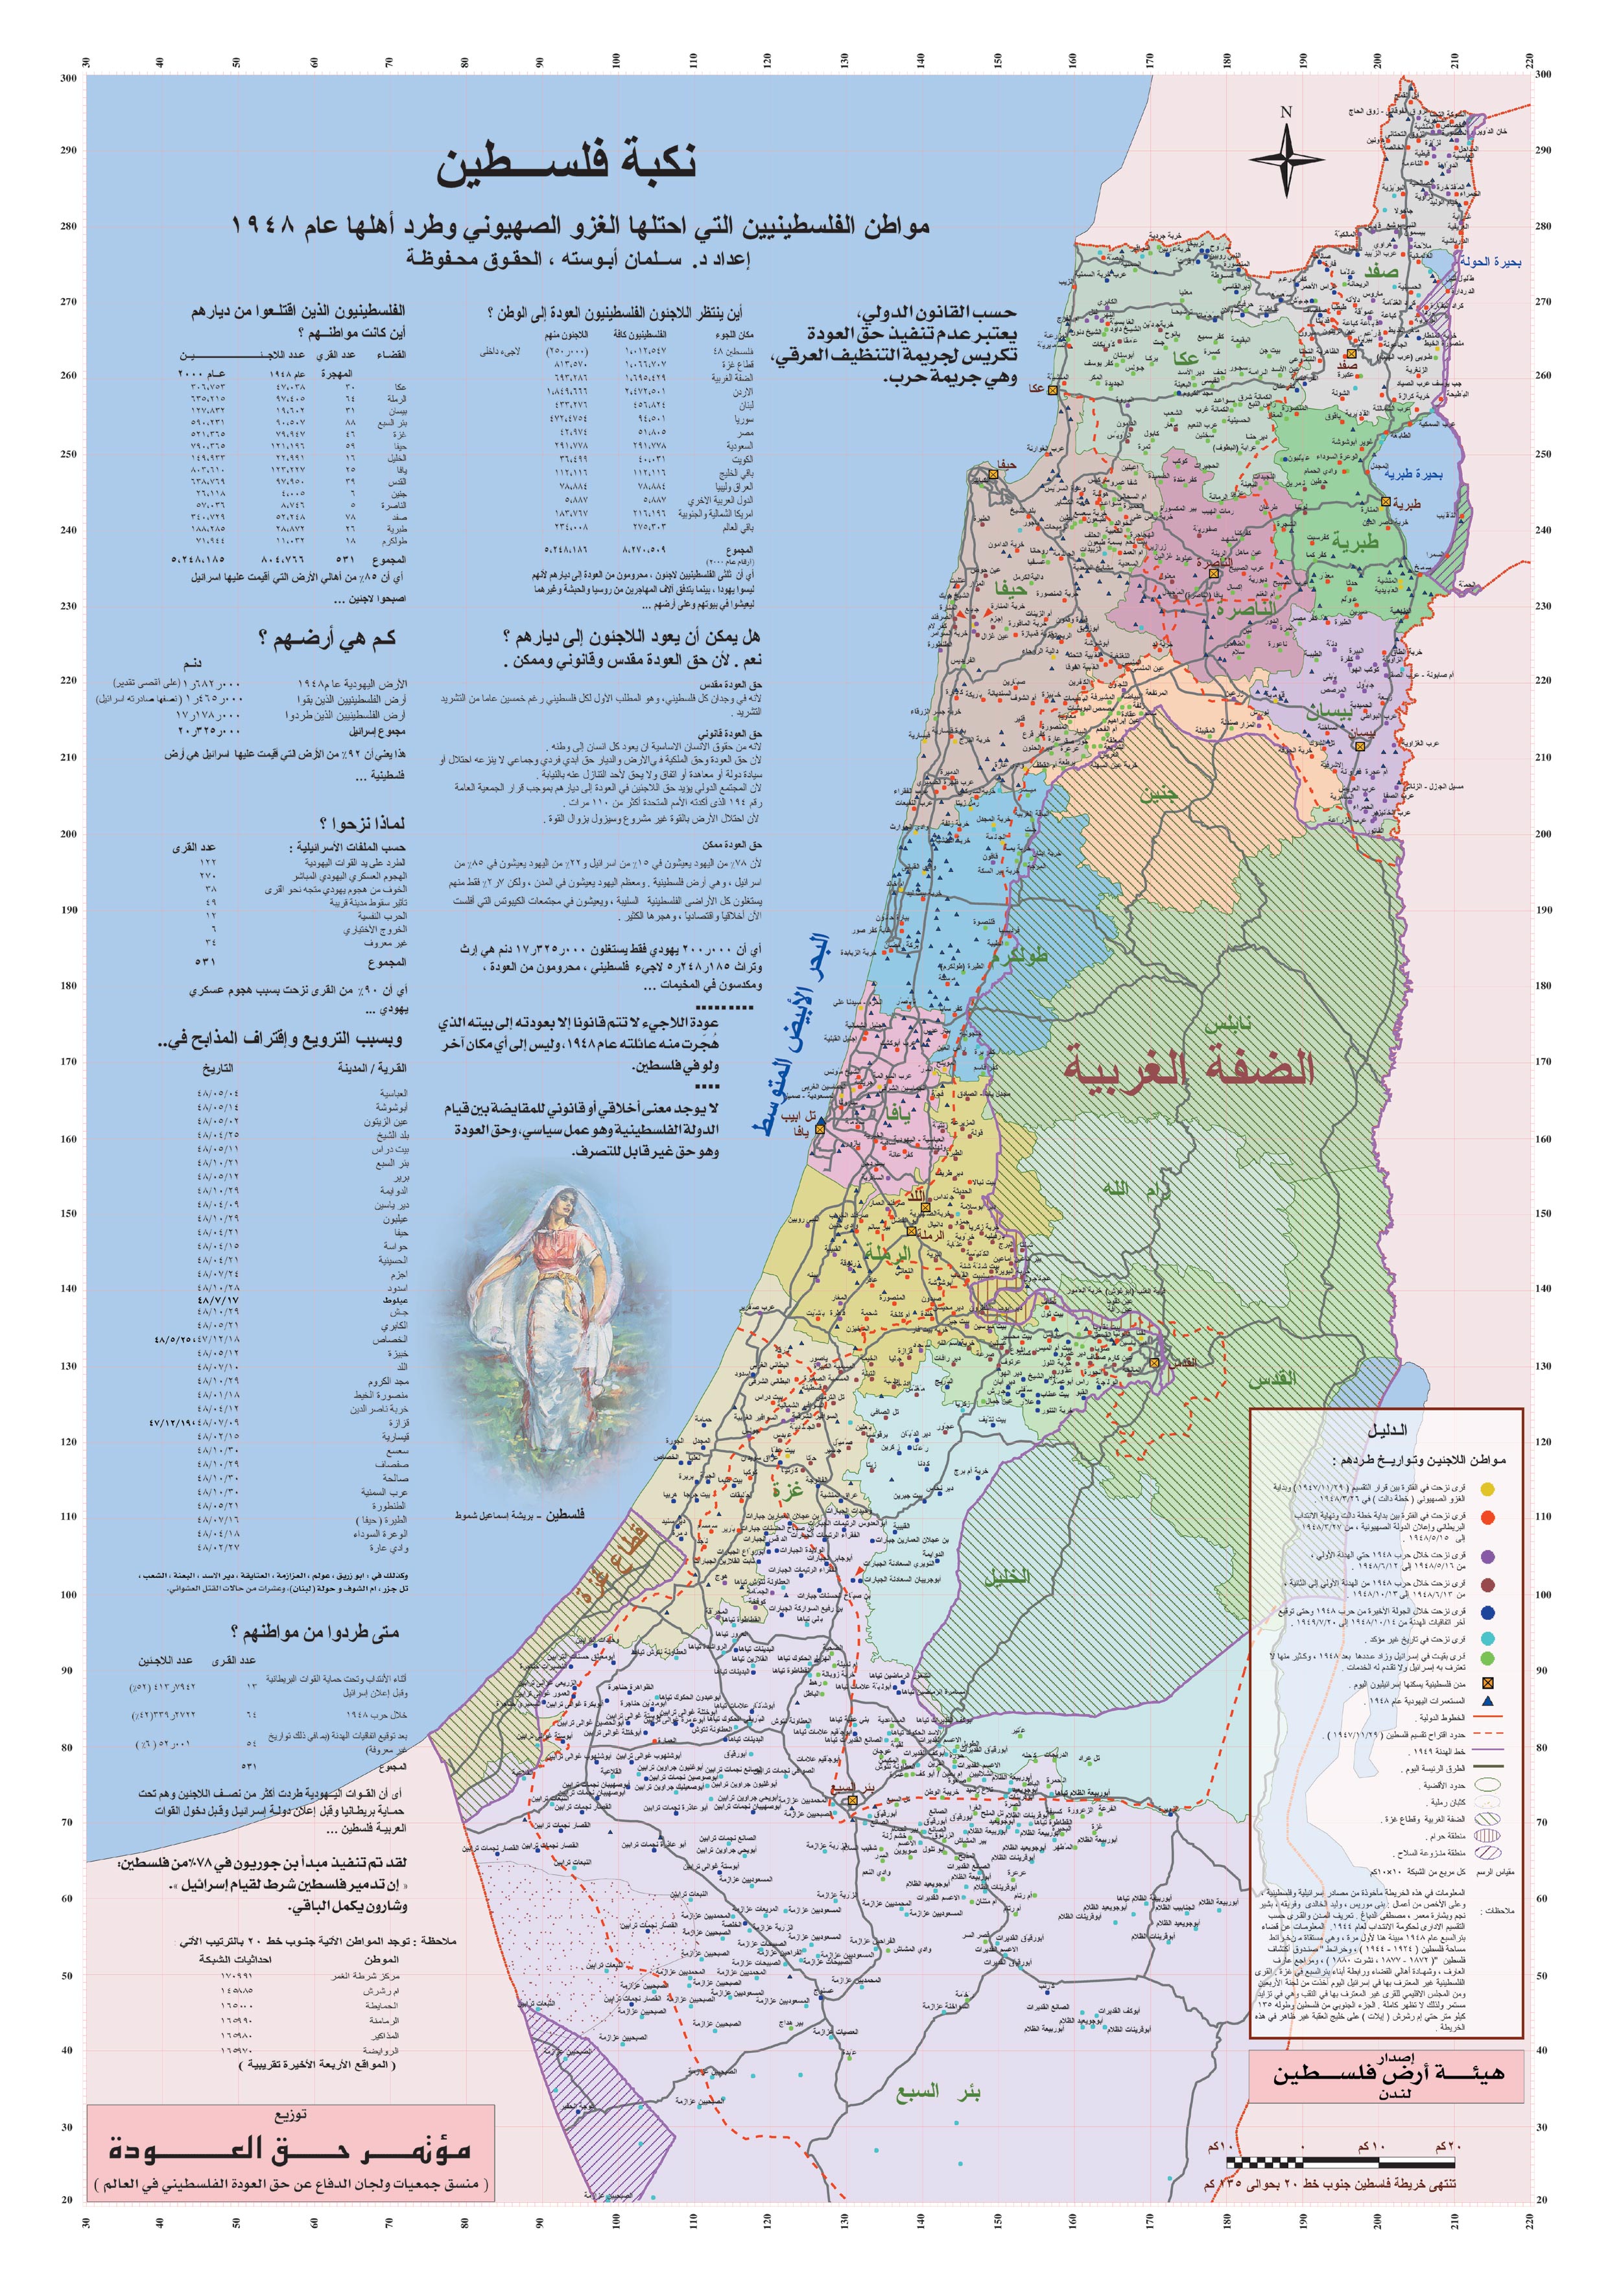 من هولندا إلى فلسطين مدن فلسطين لمحة عامة ومختصرة خارطة فلسطين التاريخية والتفصيلية